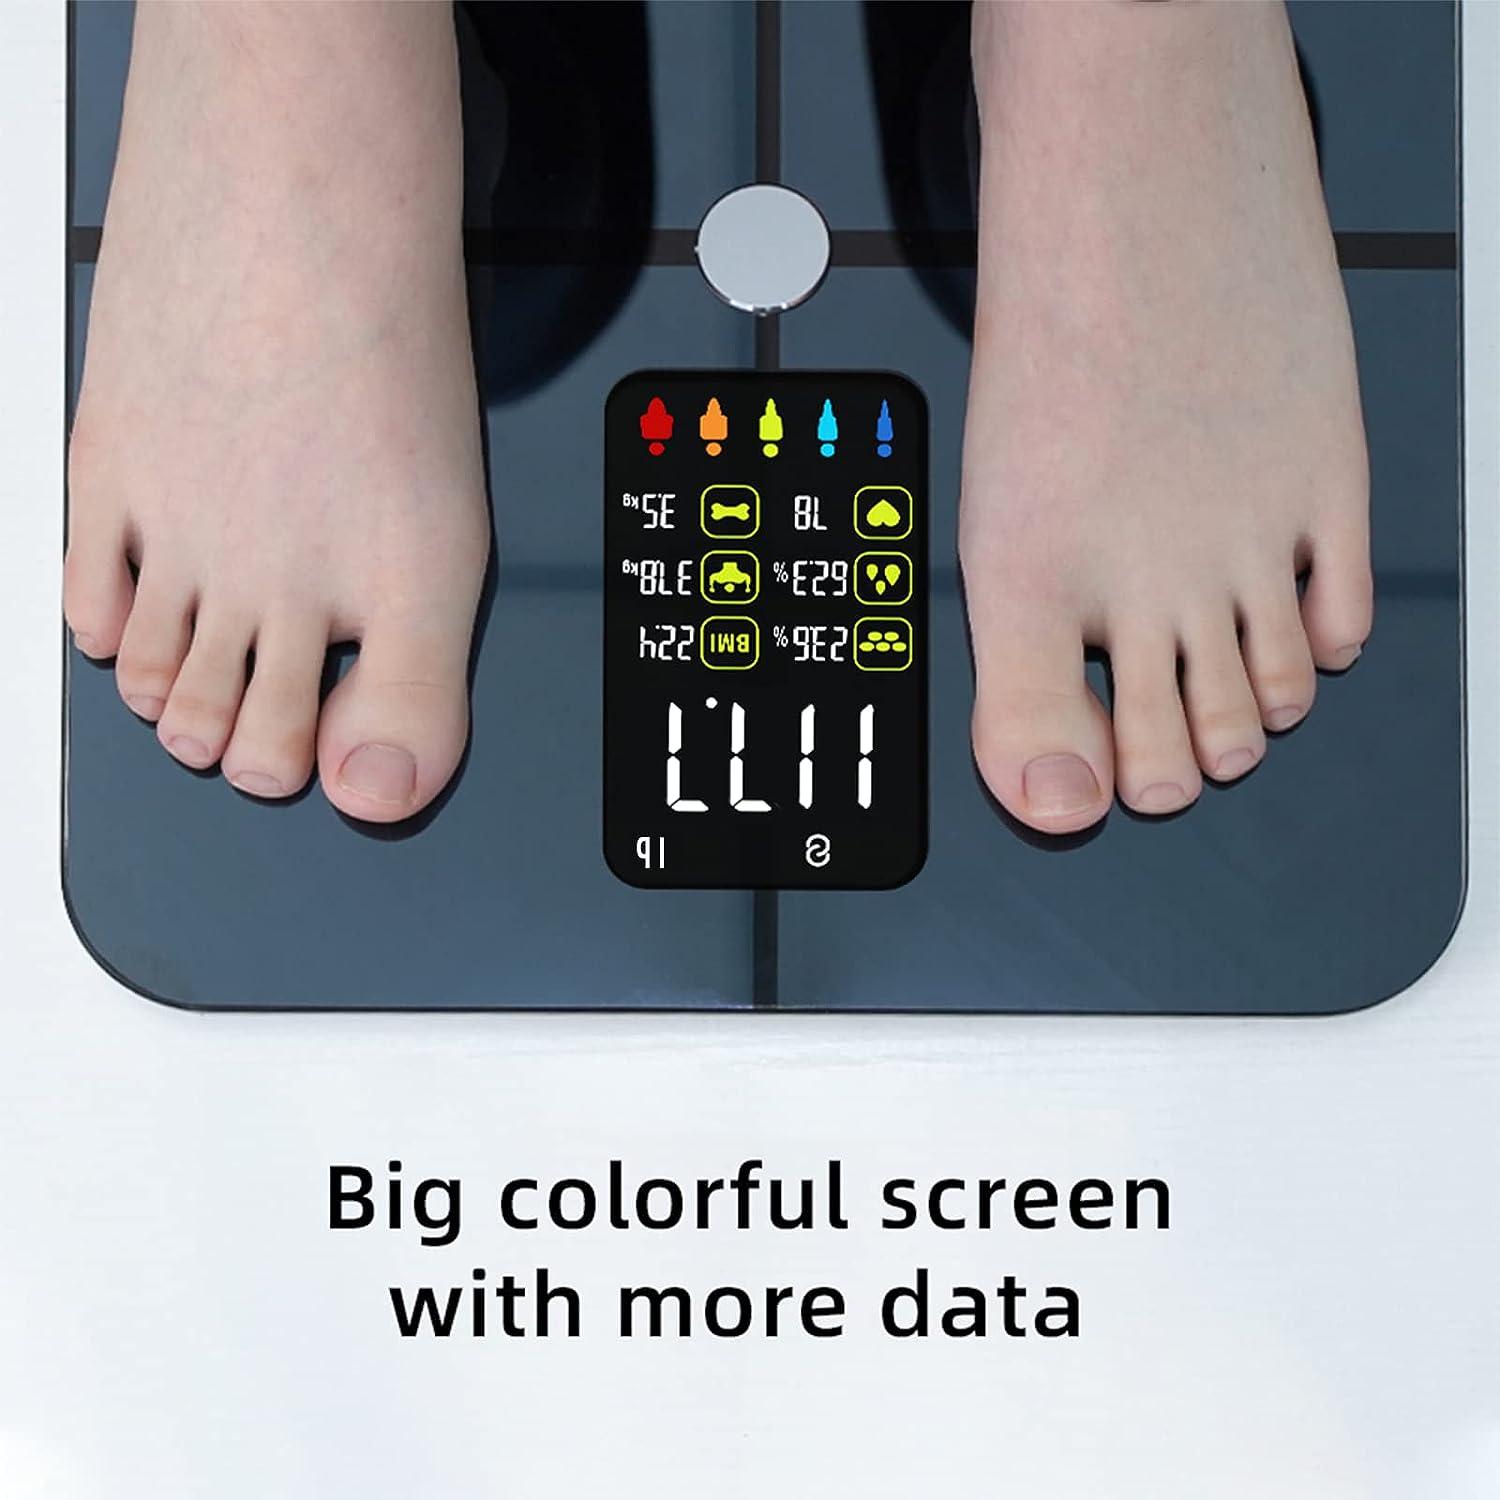 Bonlala Body Fat Scale Smart BMI Scale, Smart Scales Designed for